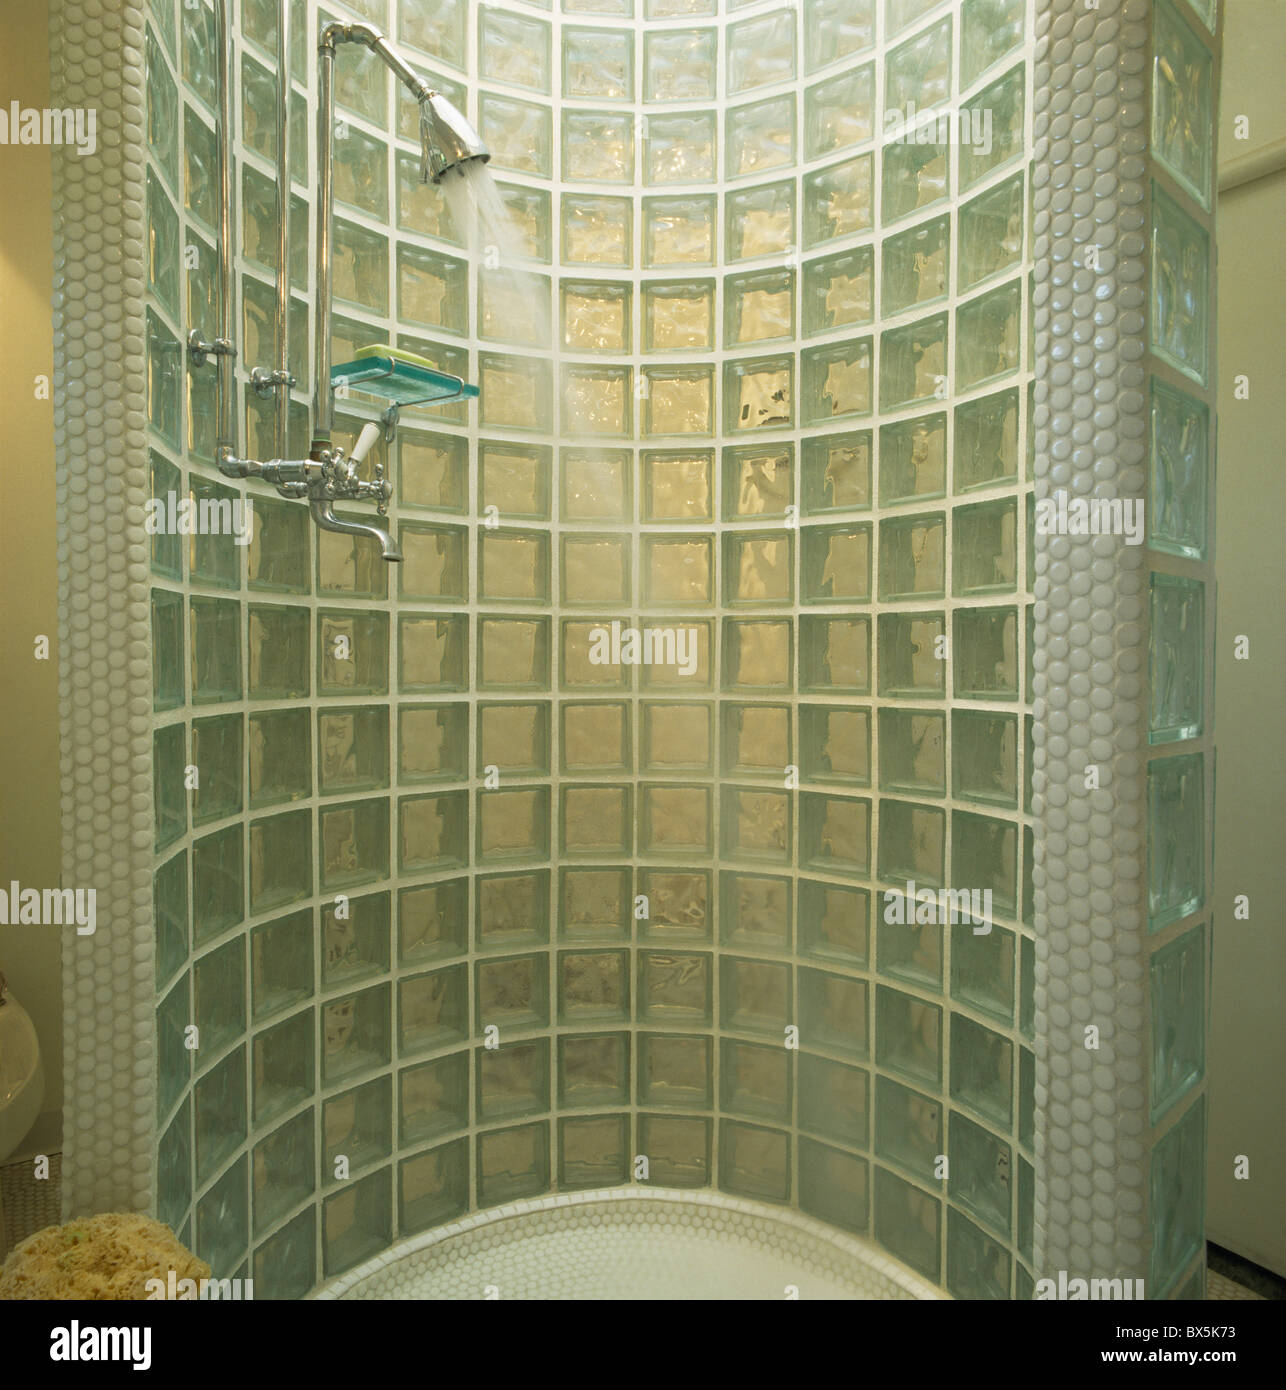 Wasser gießen aus Chrom Dusche in gebogenem Glas Brick Duschkabine  Stockfotografie - Alamy